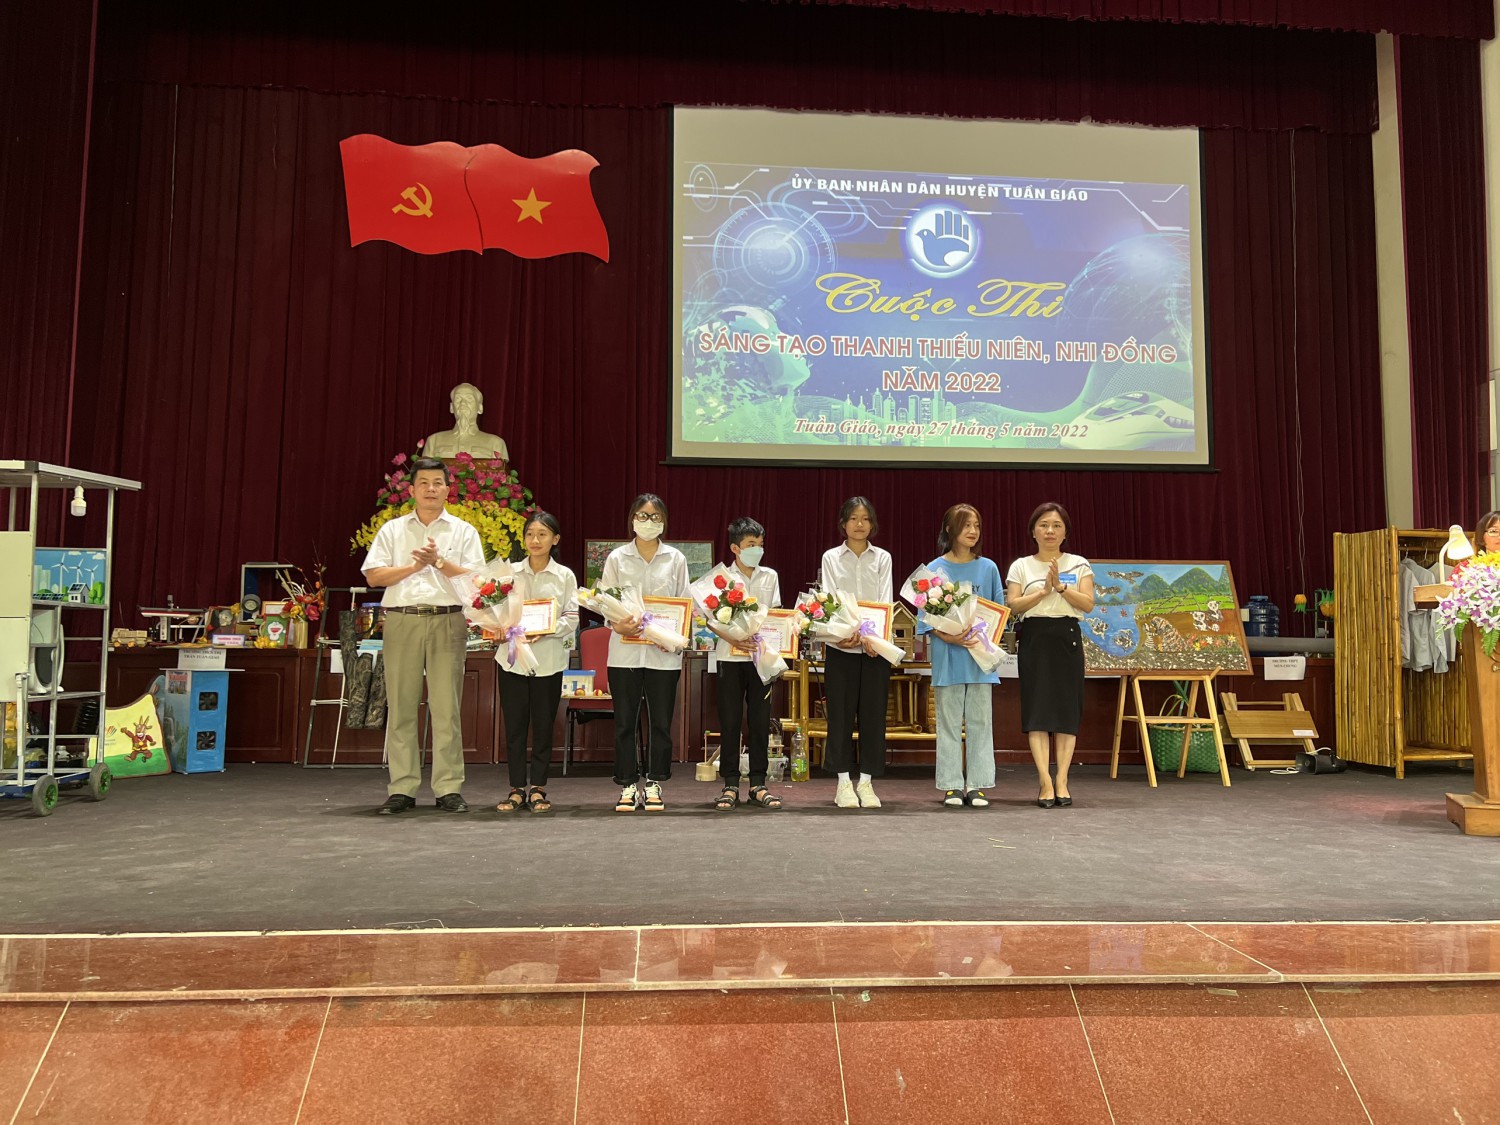 30 tác phẩm xuất sắc đạt giải cuộc thi sáng tạo Thanh thiếu niên, Nhi đồng huyện Tuần Giáo năm 2022